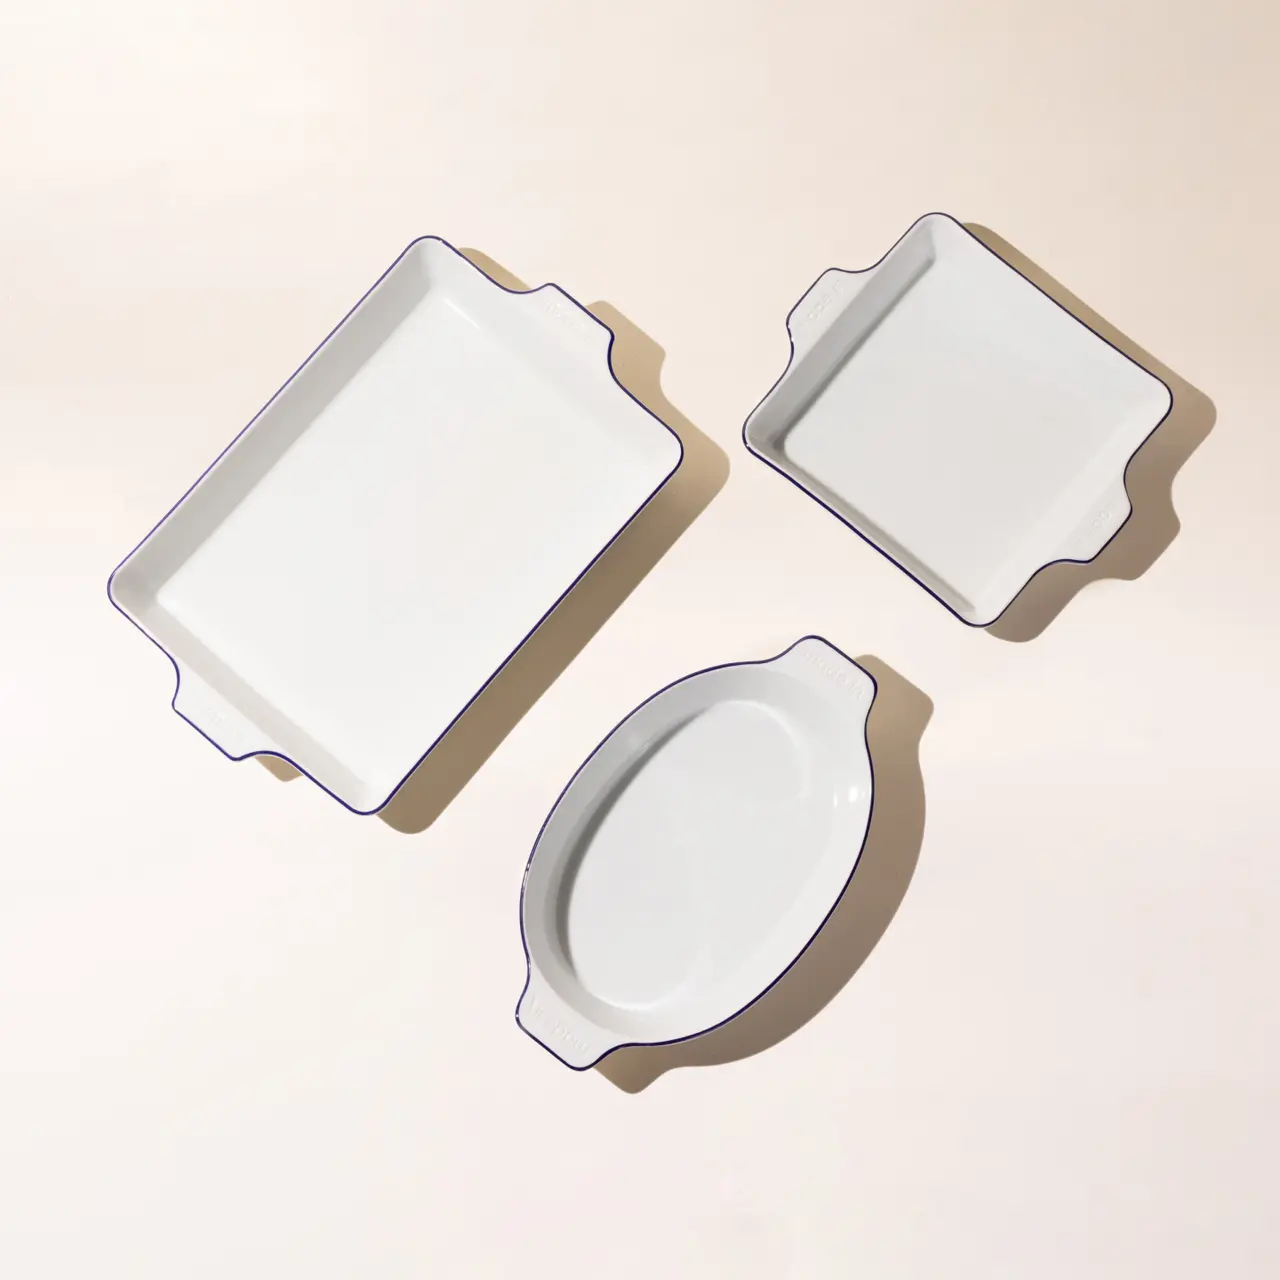 Blue Rim Porcelain Bakeware Set